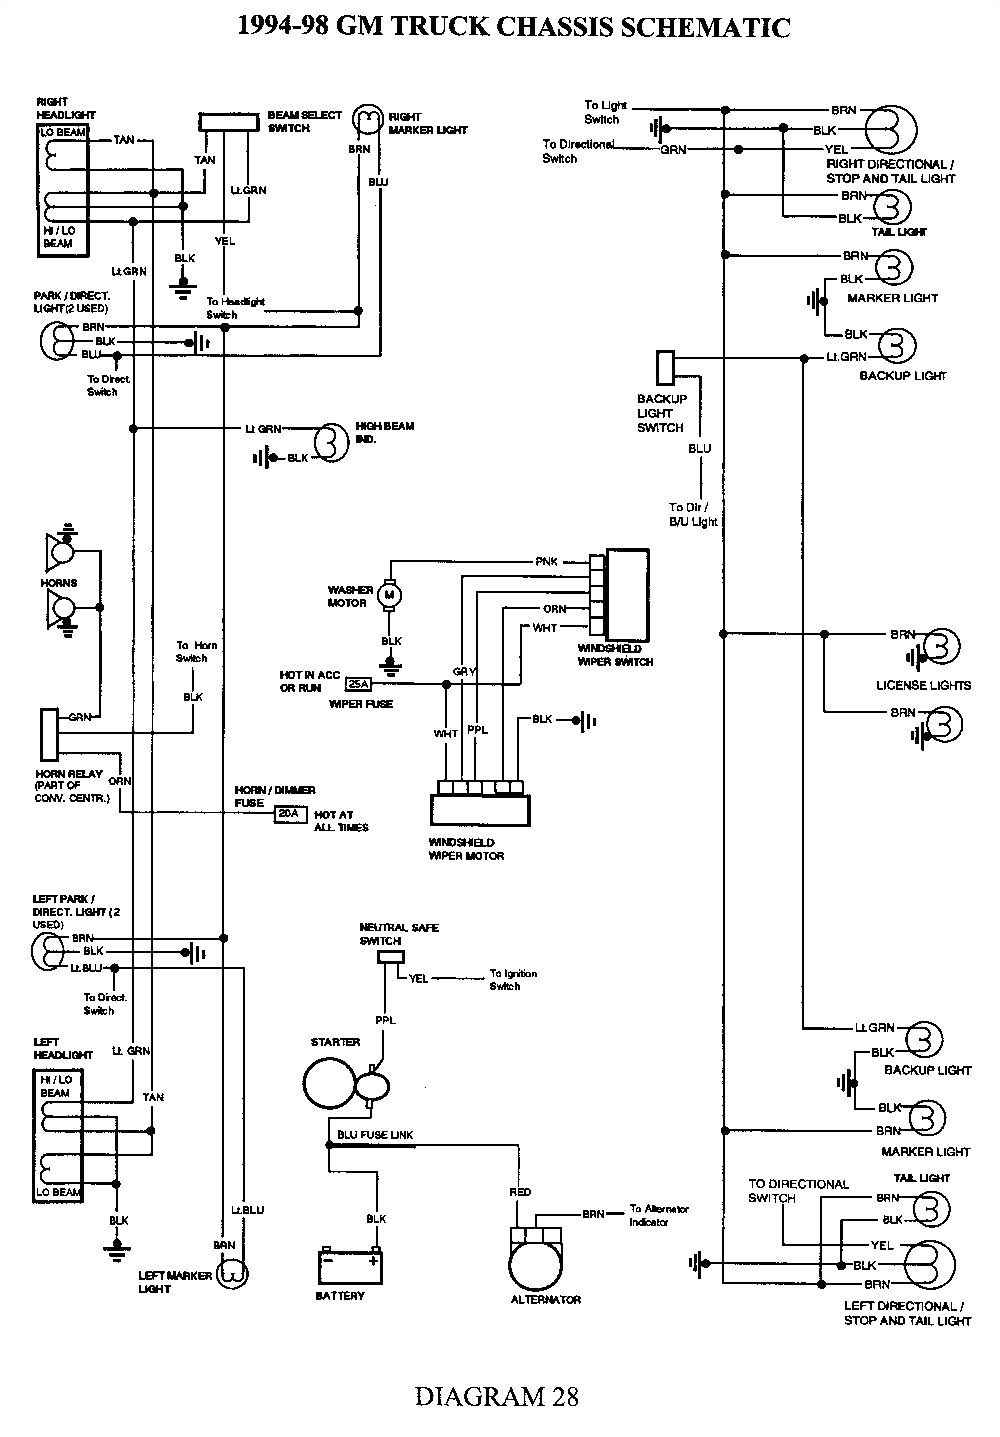 2004 chevy truck dash wiring schematics wiring diagram postwiring diagram for 2004 suburban dash wiring diagram